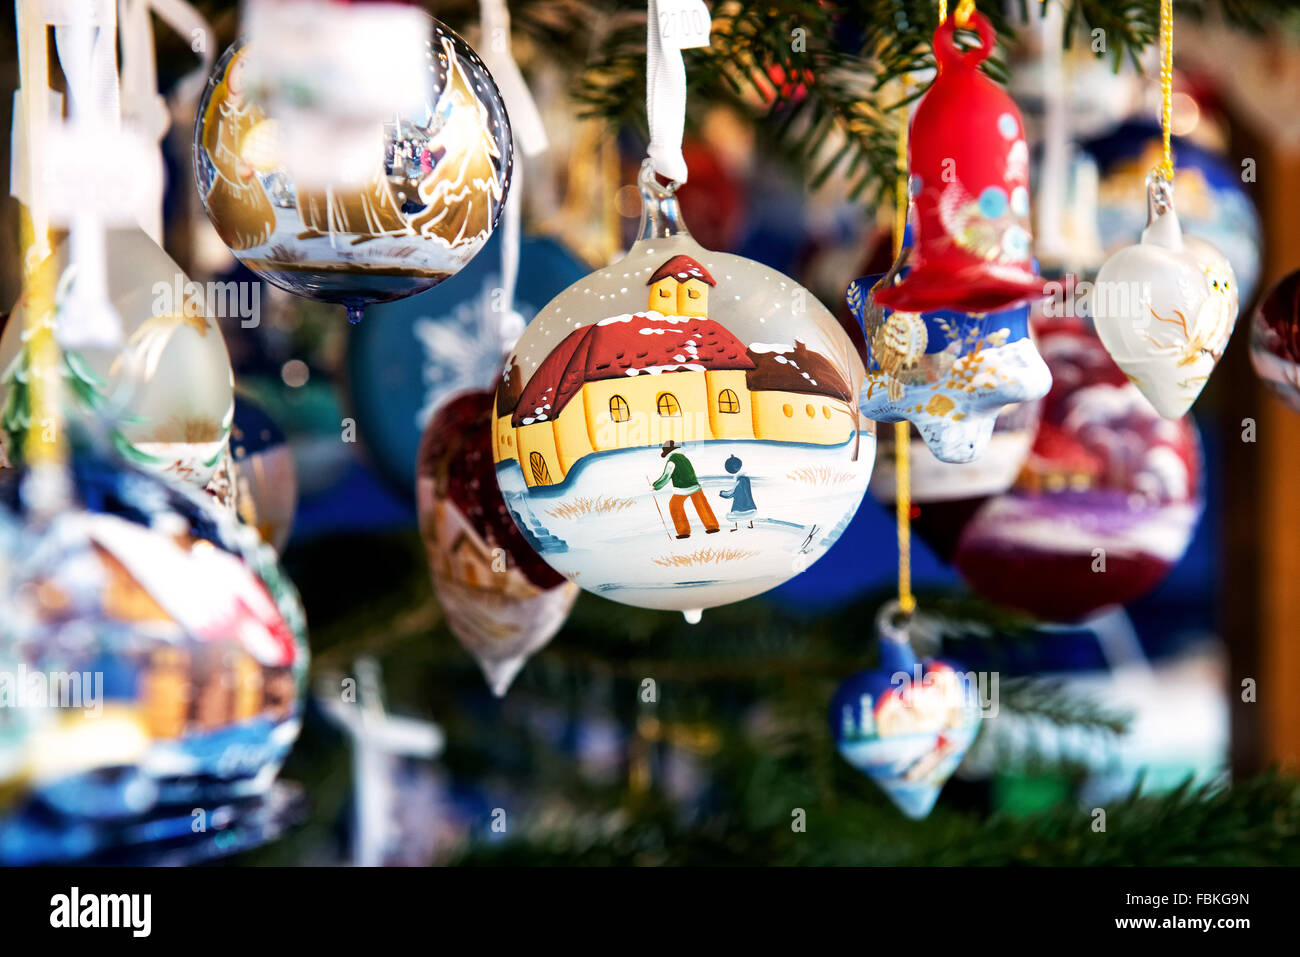 Boule de Noël Boule décorative ou montrant une scène d'hiver suspendu par un ruban dans un marché avec un assortiment d'autres ornements Banque D'Images